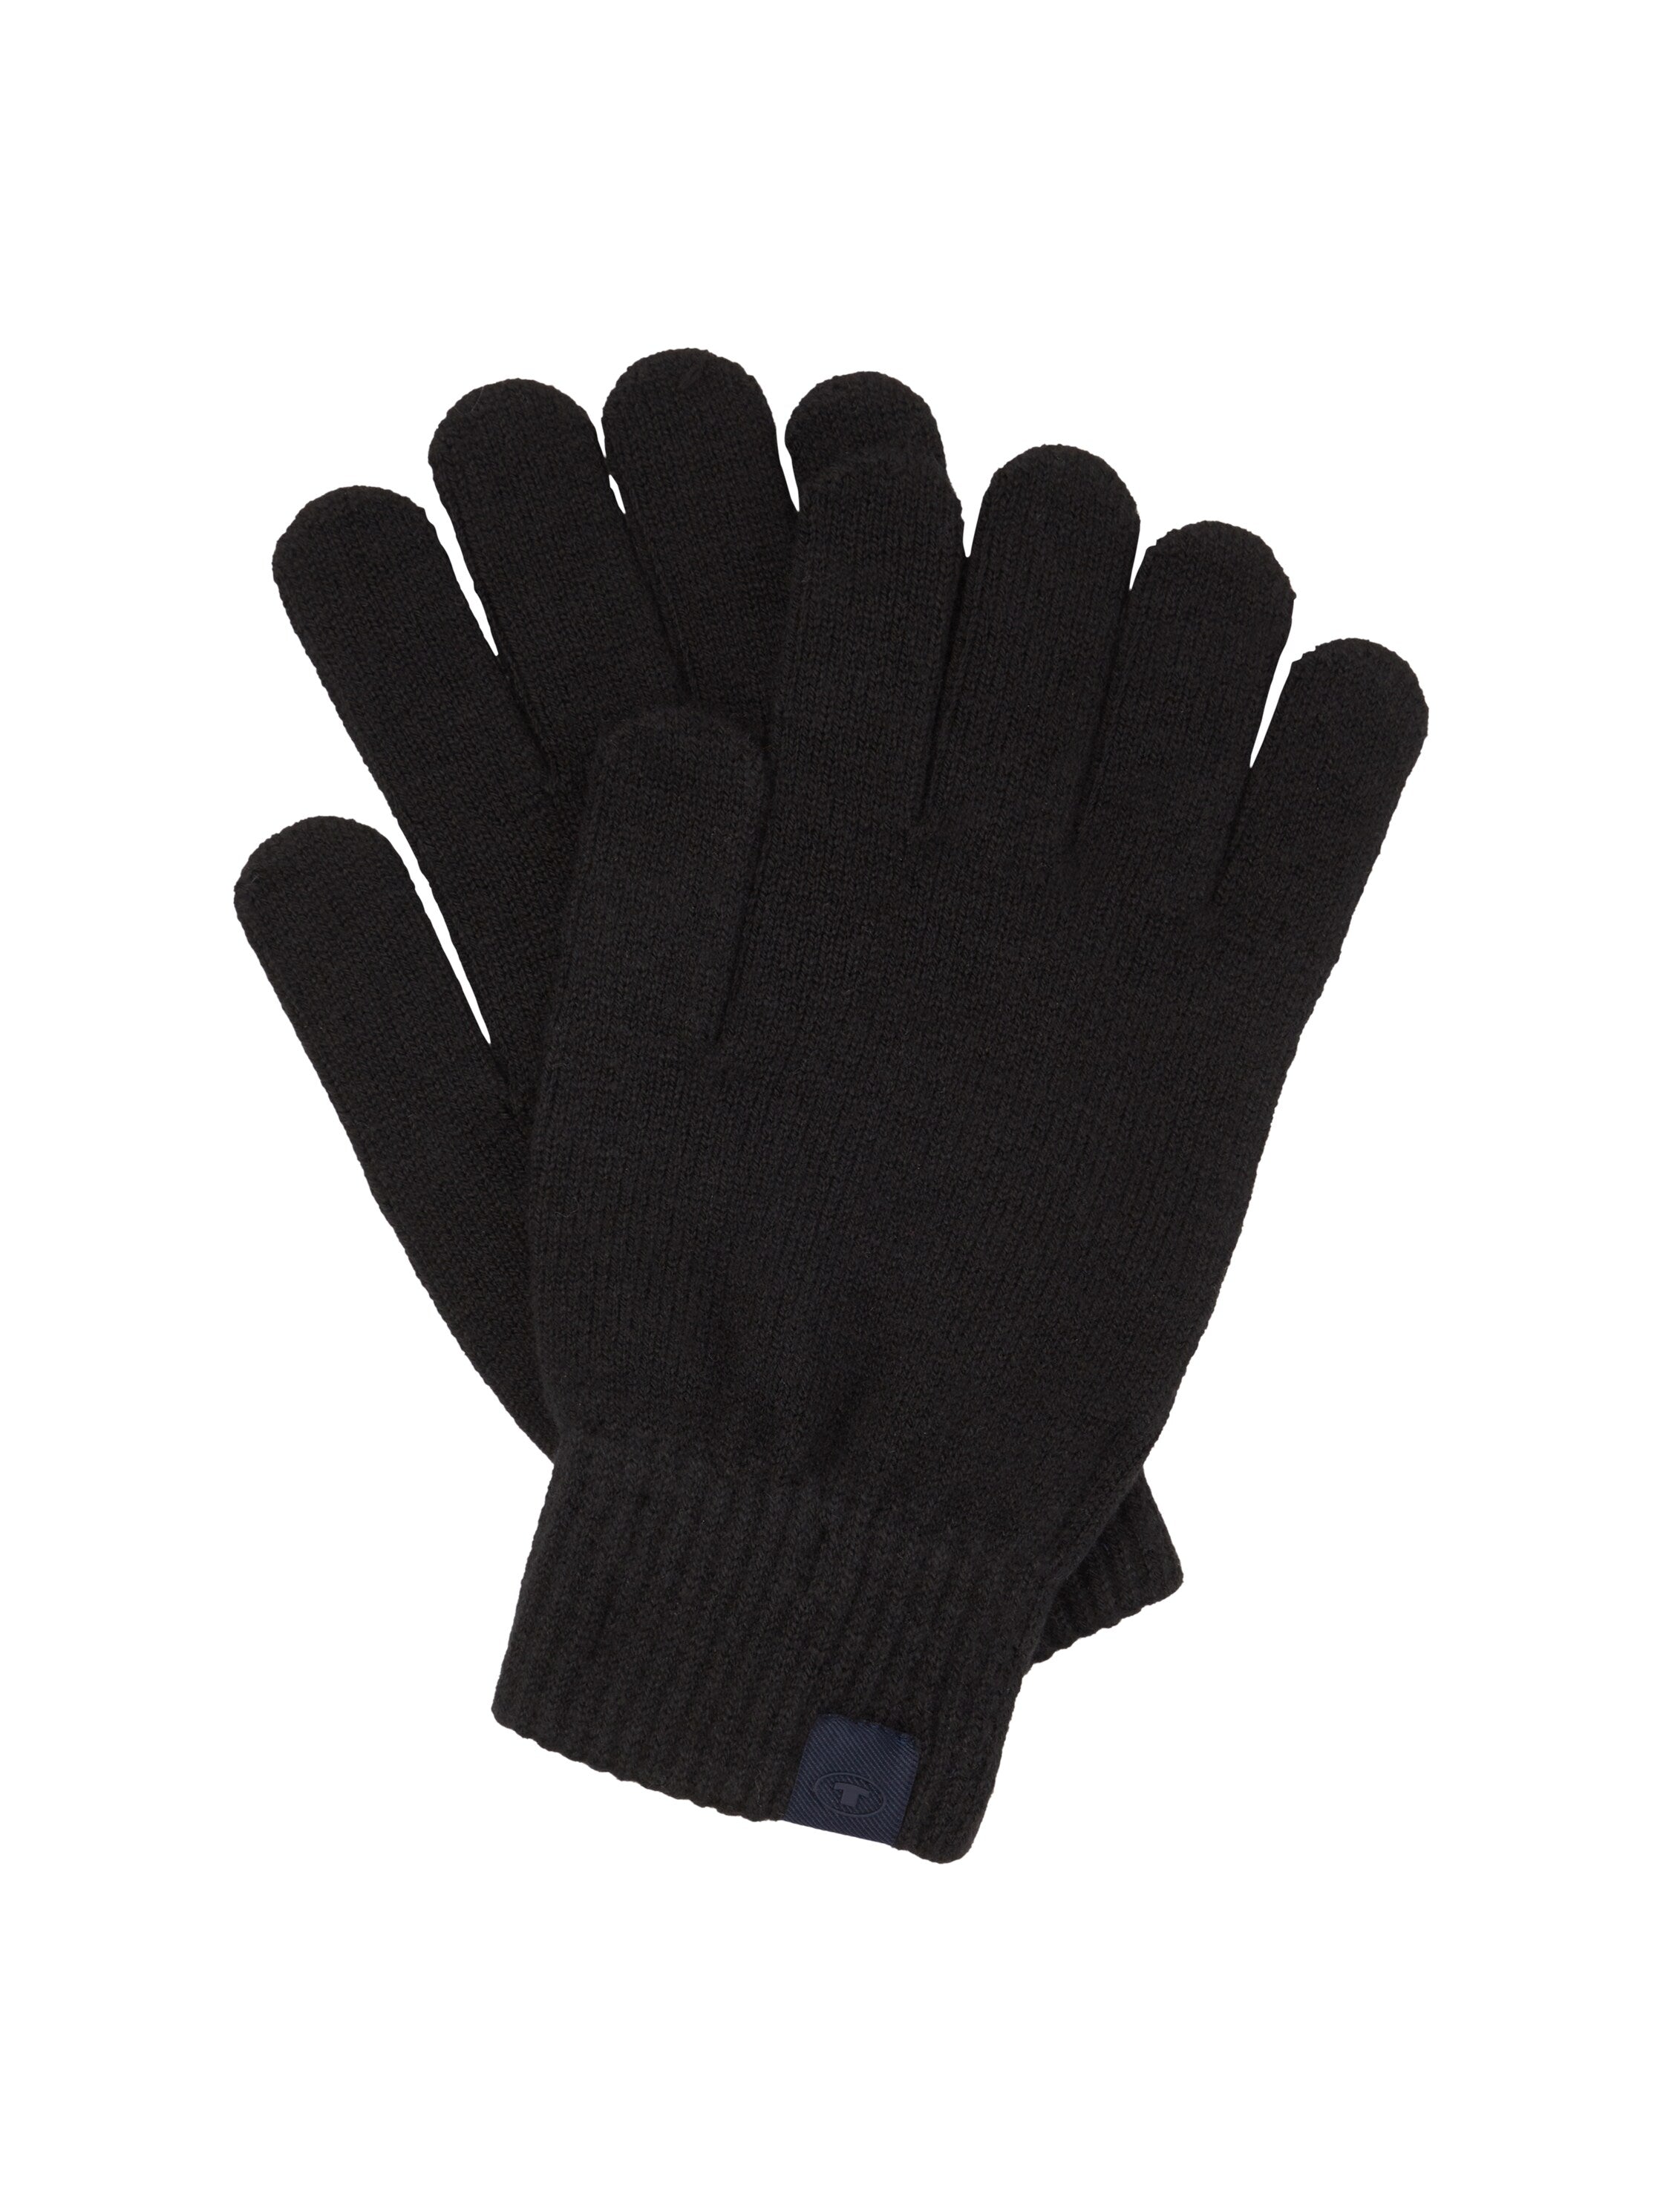 Tom Tailor Winter Black Gloves